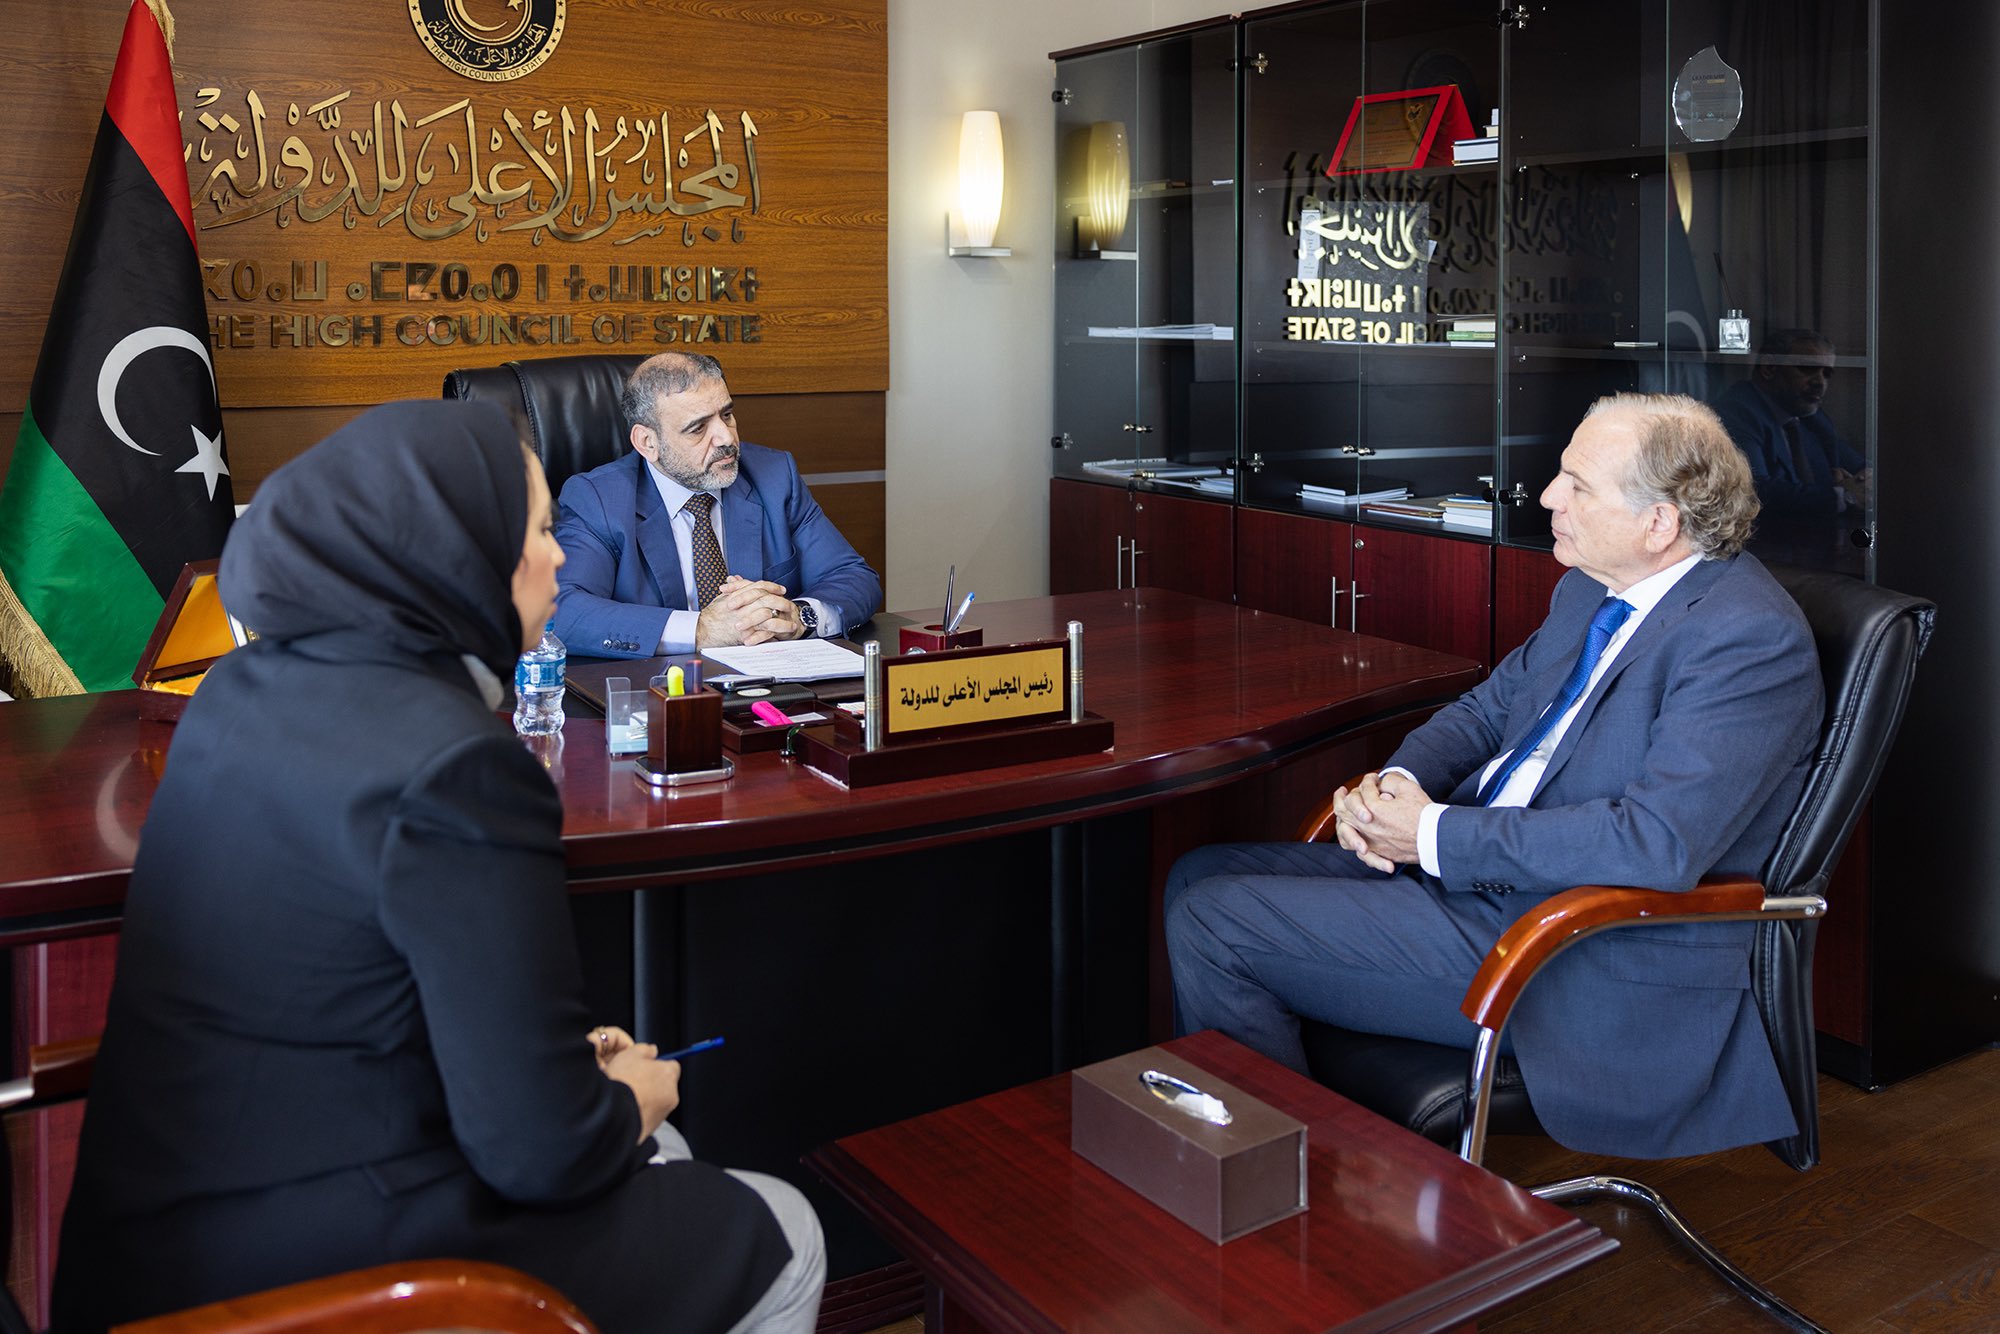 المشري والسفير الهولندي لدى ليبيا يتفقان على أهمية المصالحة الوطنية الشاملة في البلاد.